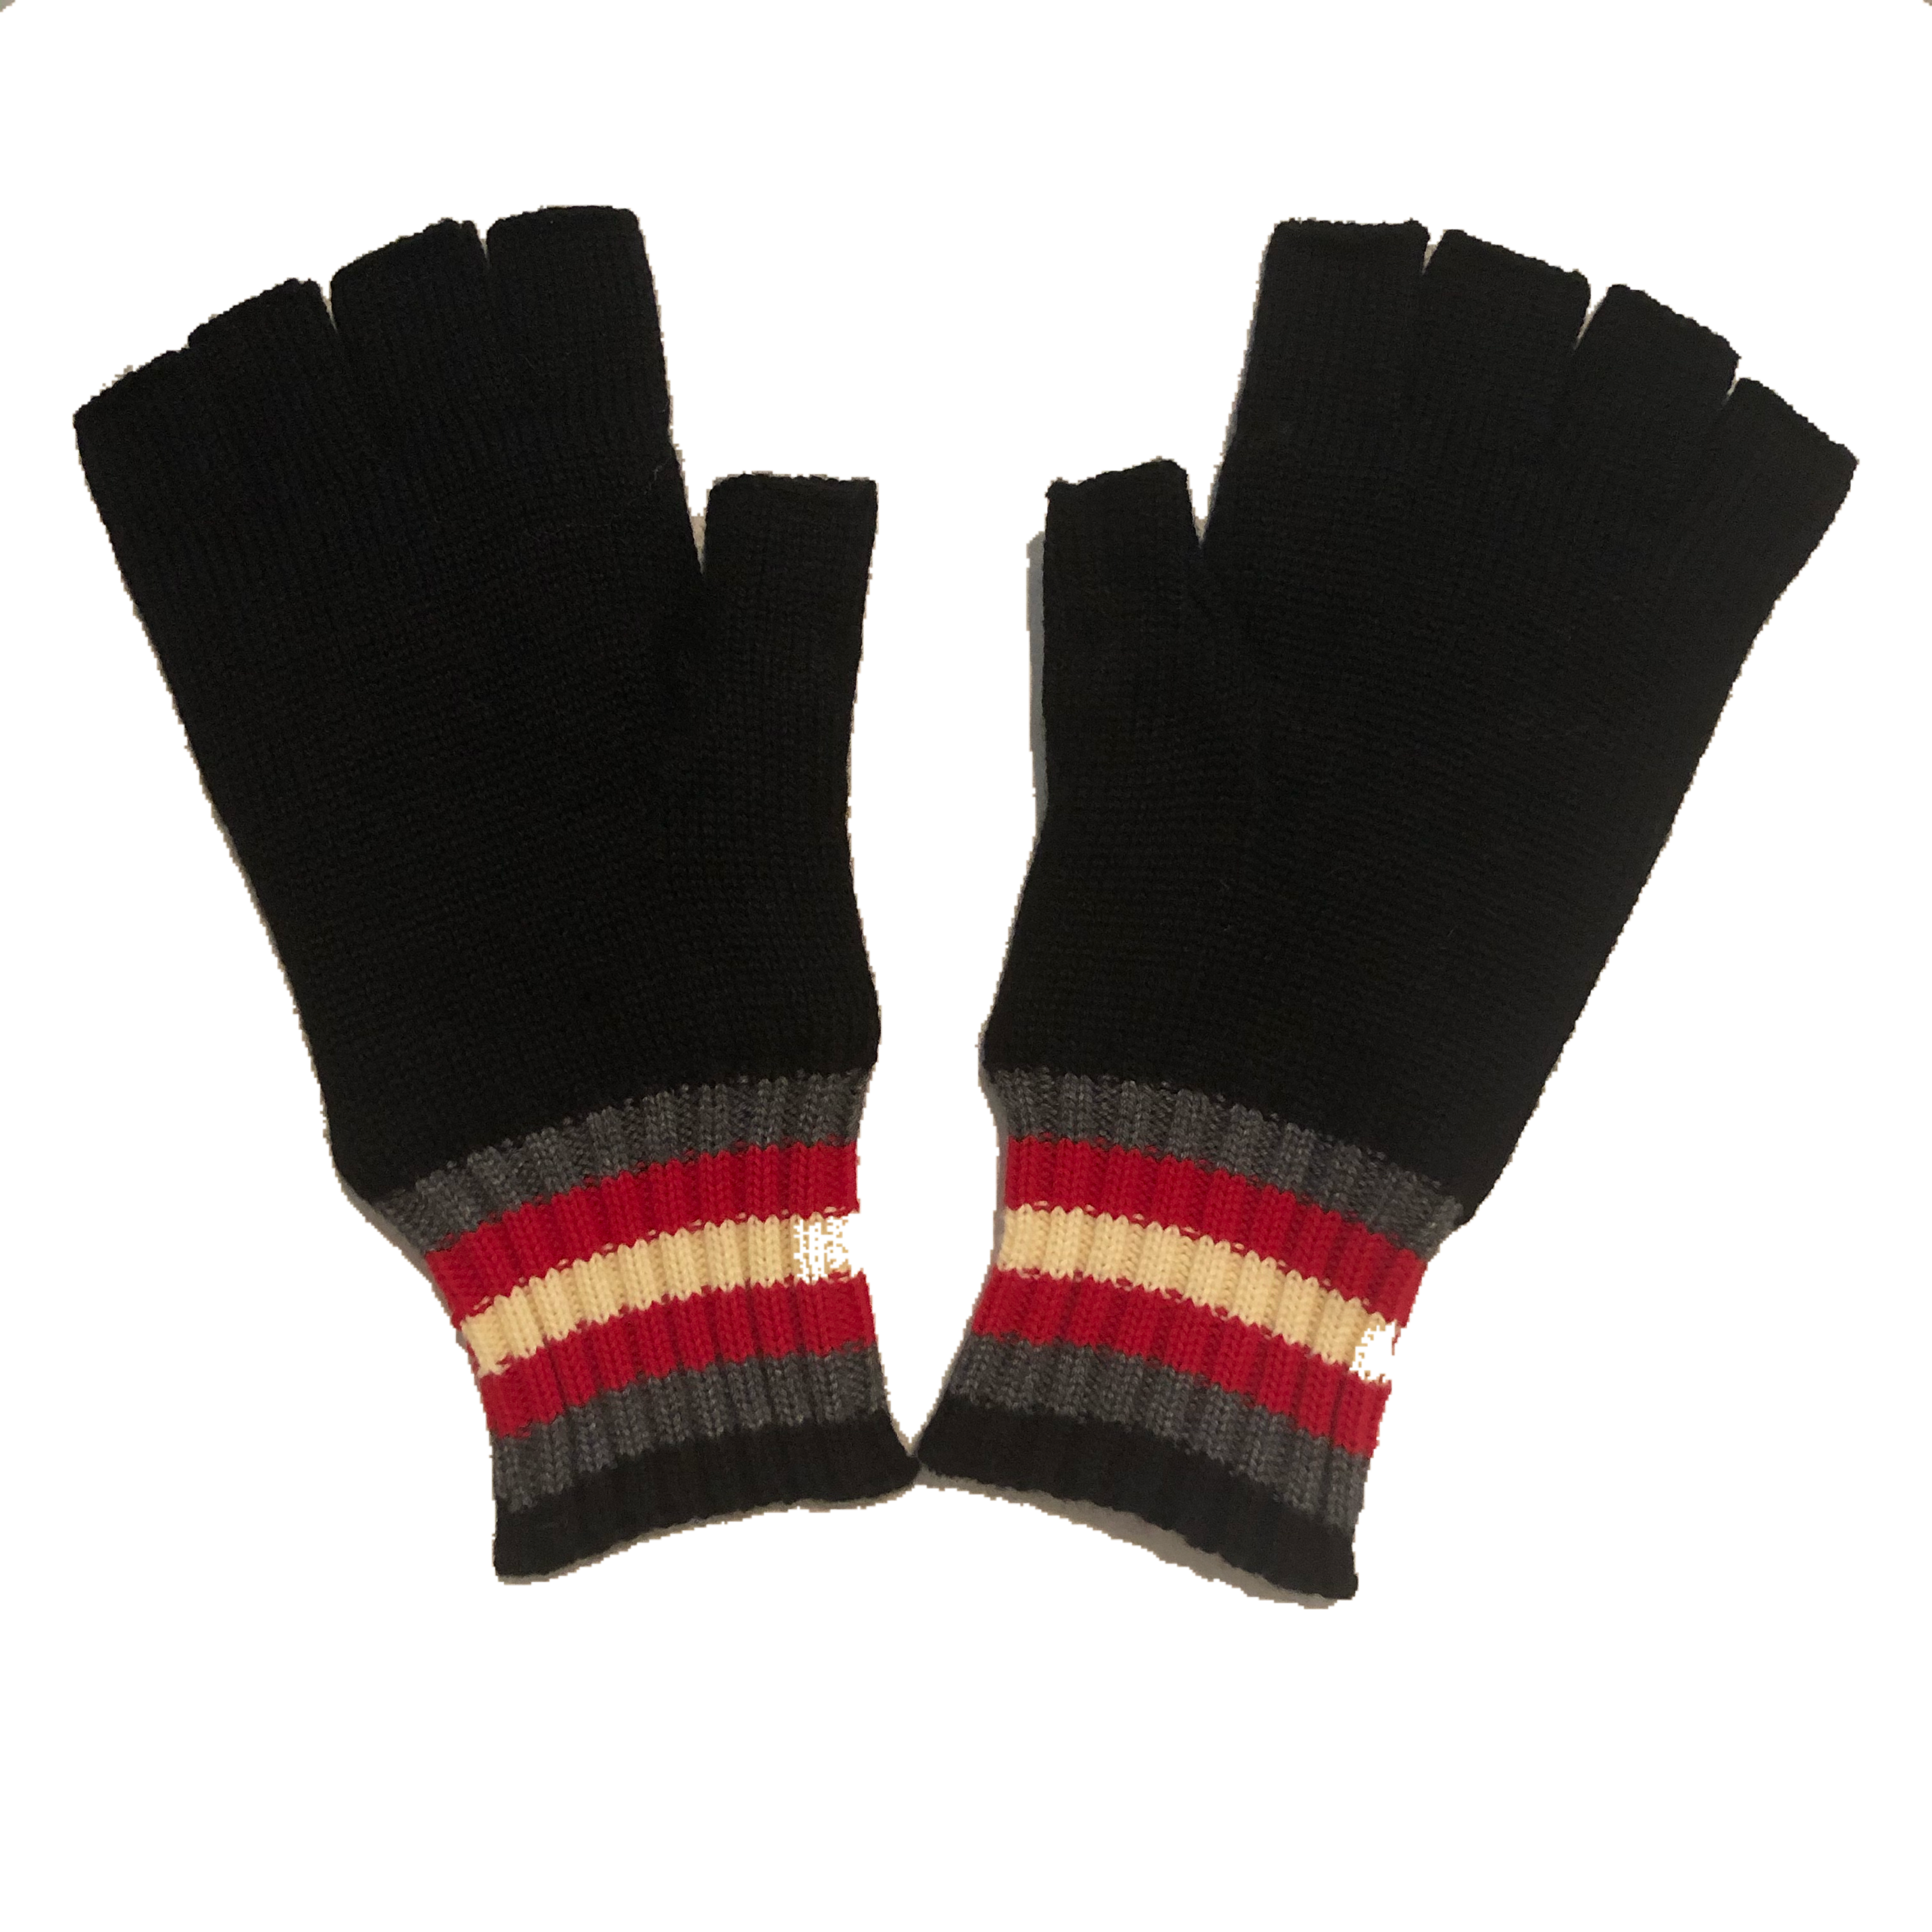 alps fingerless glove